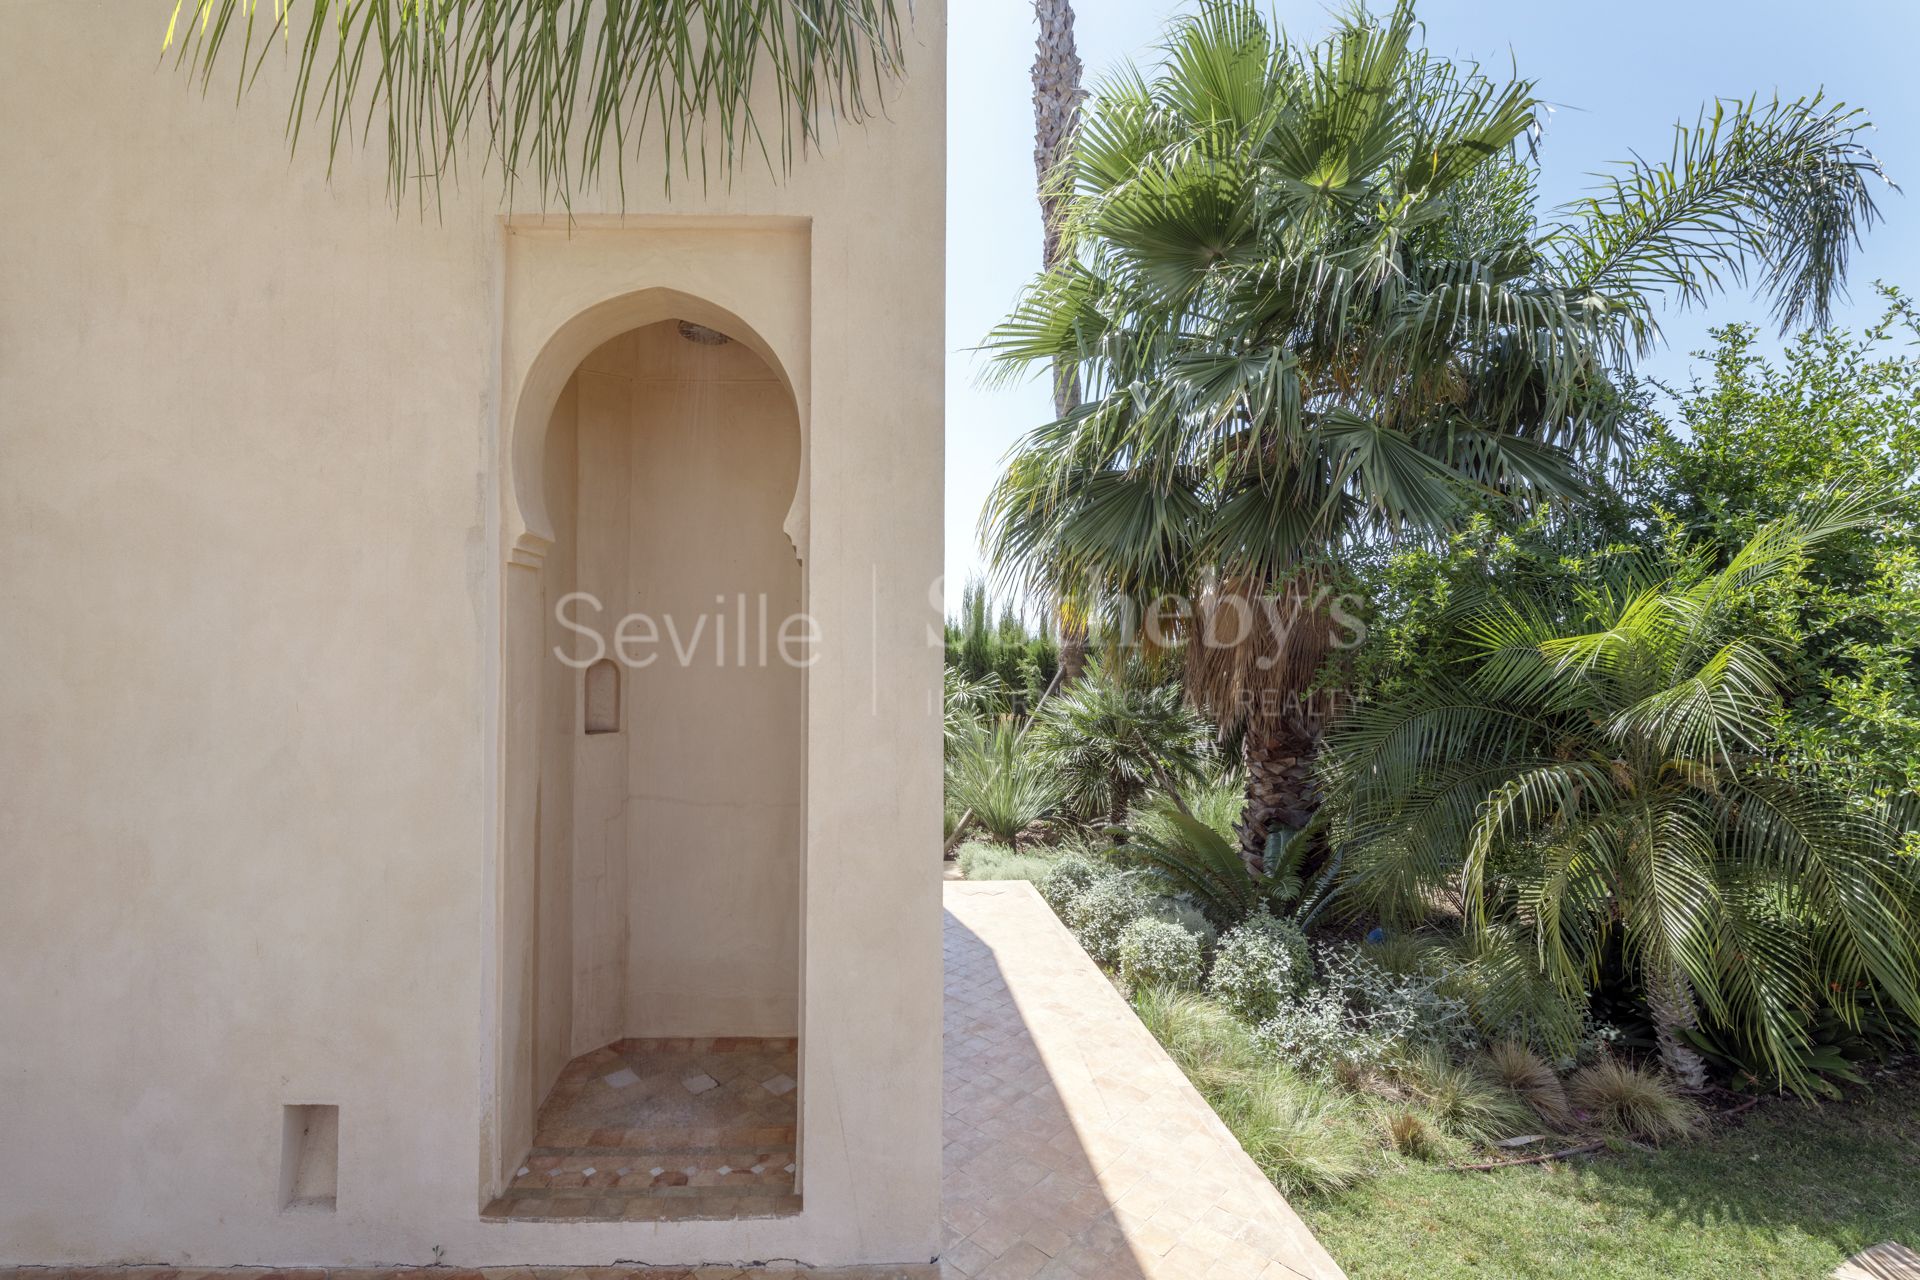 Casa super exclusiva con hammam y casa de Invitados. Un oasis natural en Sevilla.